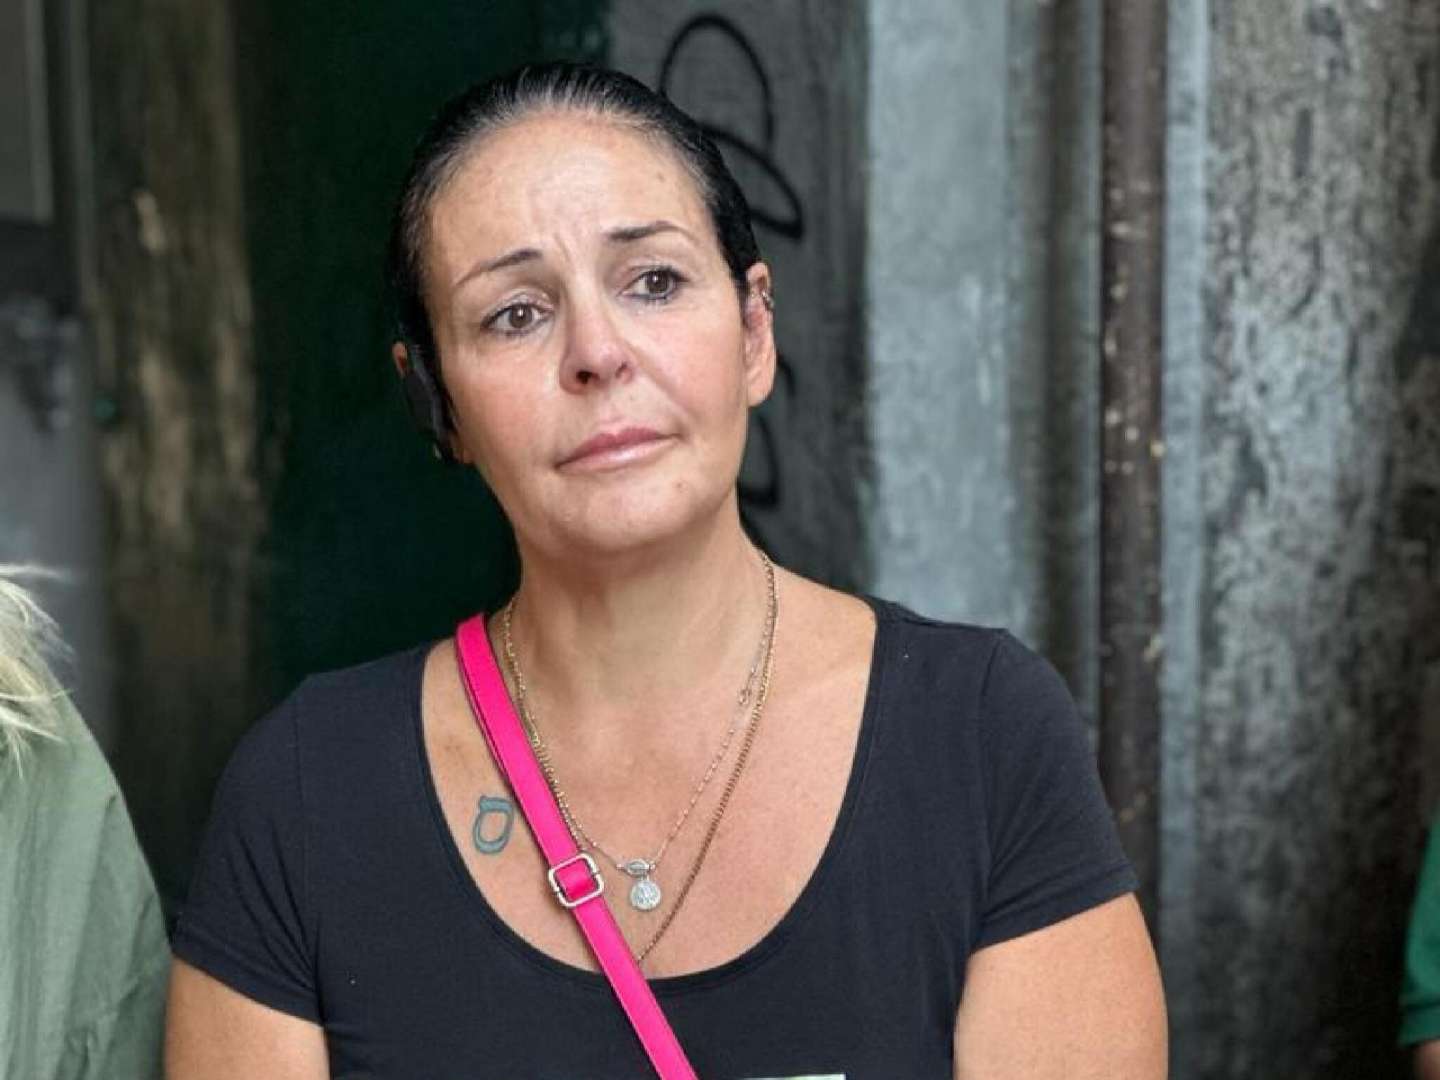 Mamma di Giogiò a Mattarella: “Cambiare la legge sui baby killer”